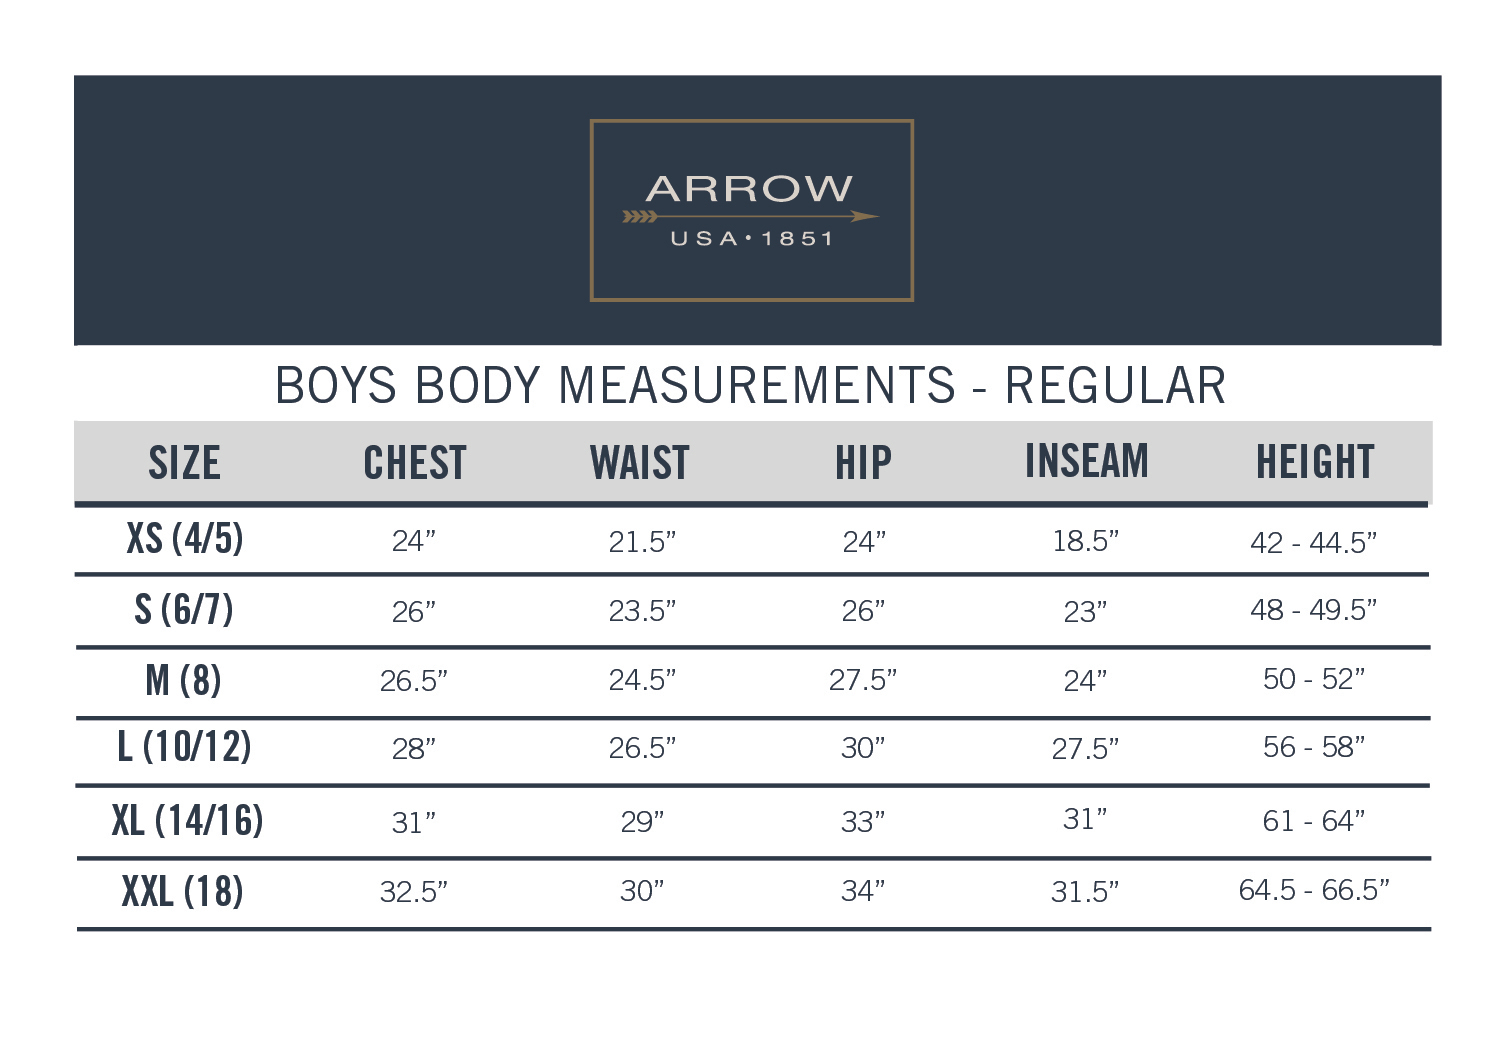 Arrow Aroflex Stretch Poplin Fashion Dress Shirt and Tie, 2 Piece Set, Sizes 4-18 - image 3 of 3